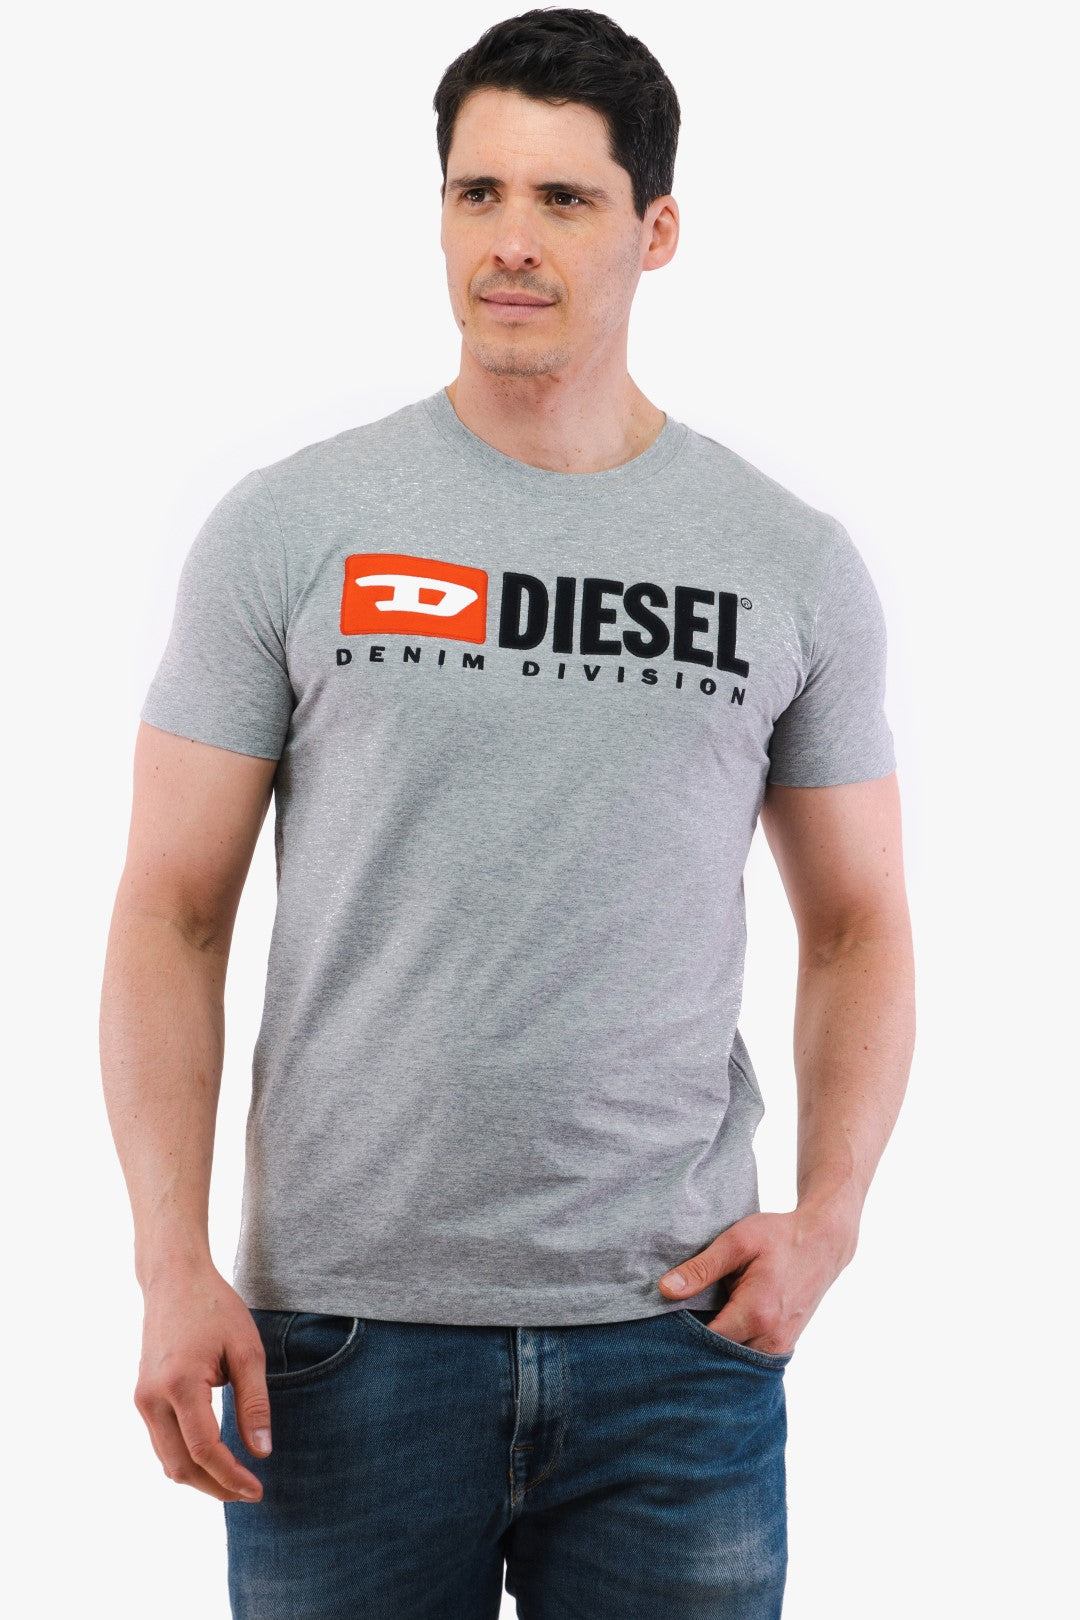 T-Shirt Diesel De Couleur Charbon Homme